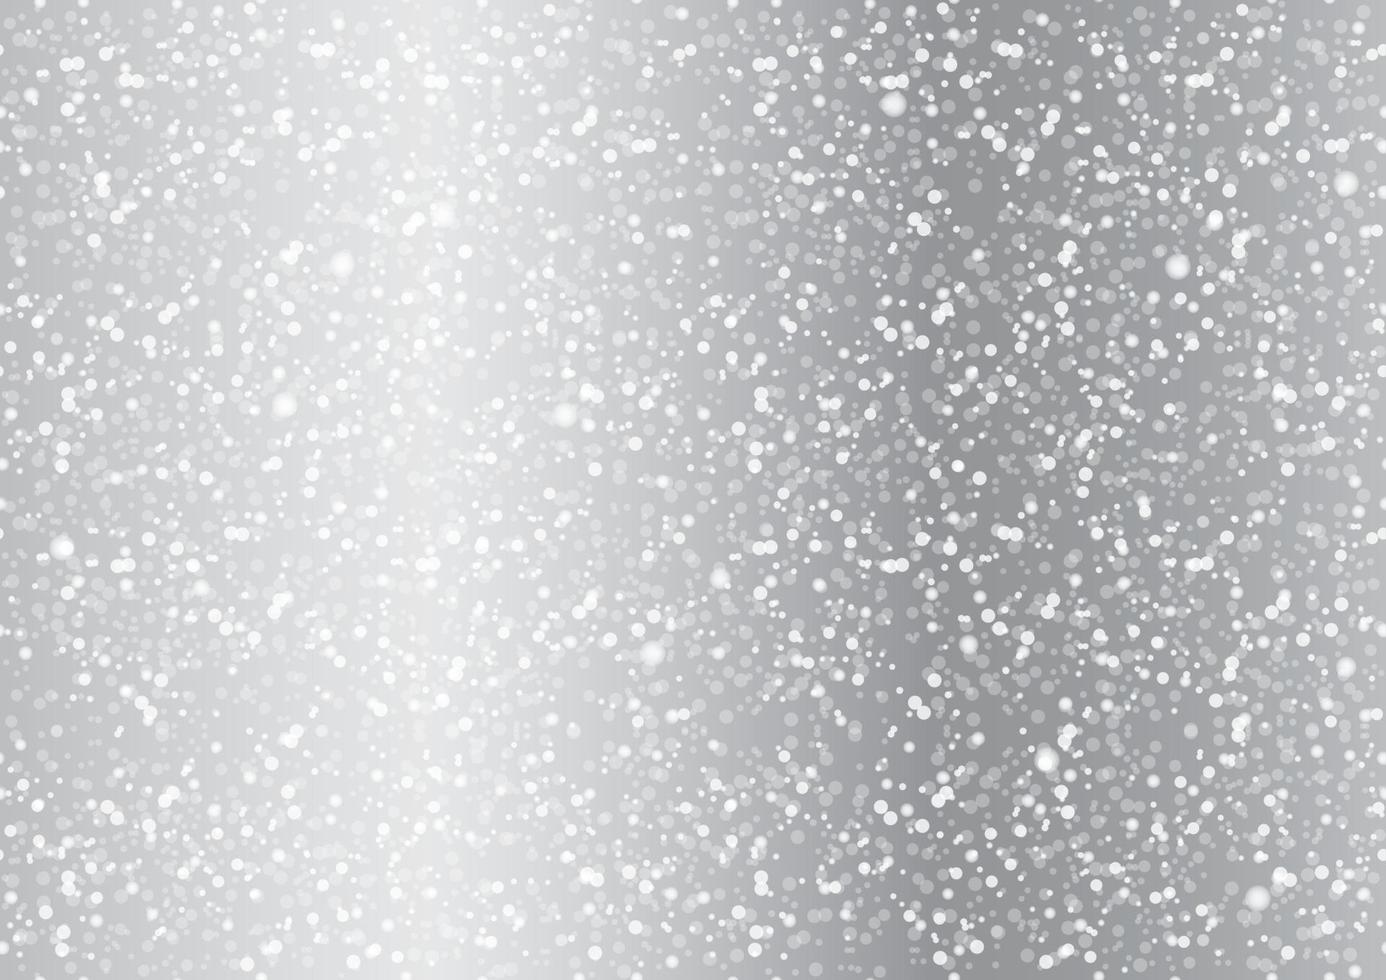 sömlös silverabstrakt bakgrund med snöflingor, ljus och glorier. vektor illustration. repeterbar horisontellt och vertikalt.